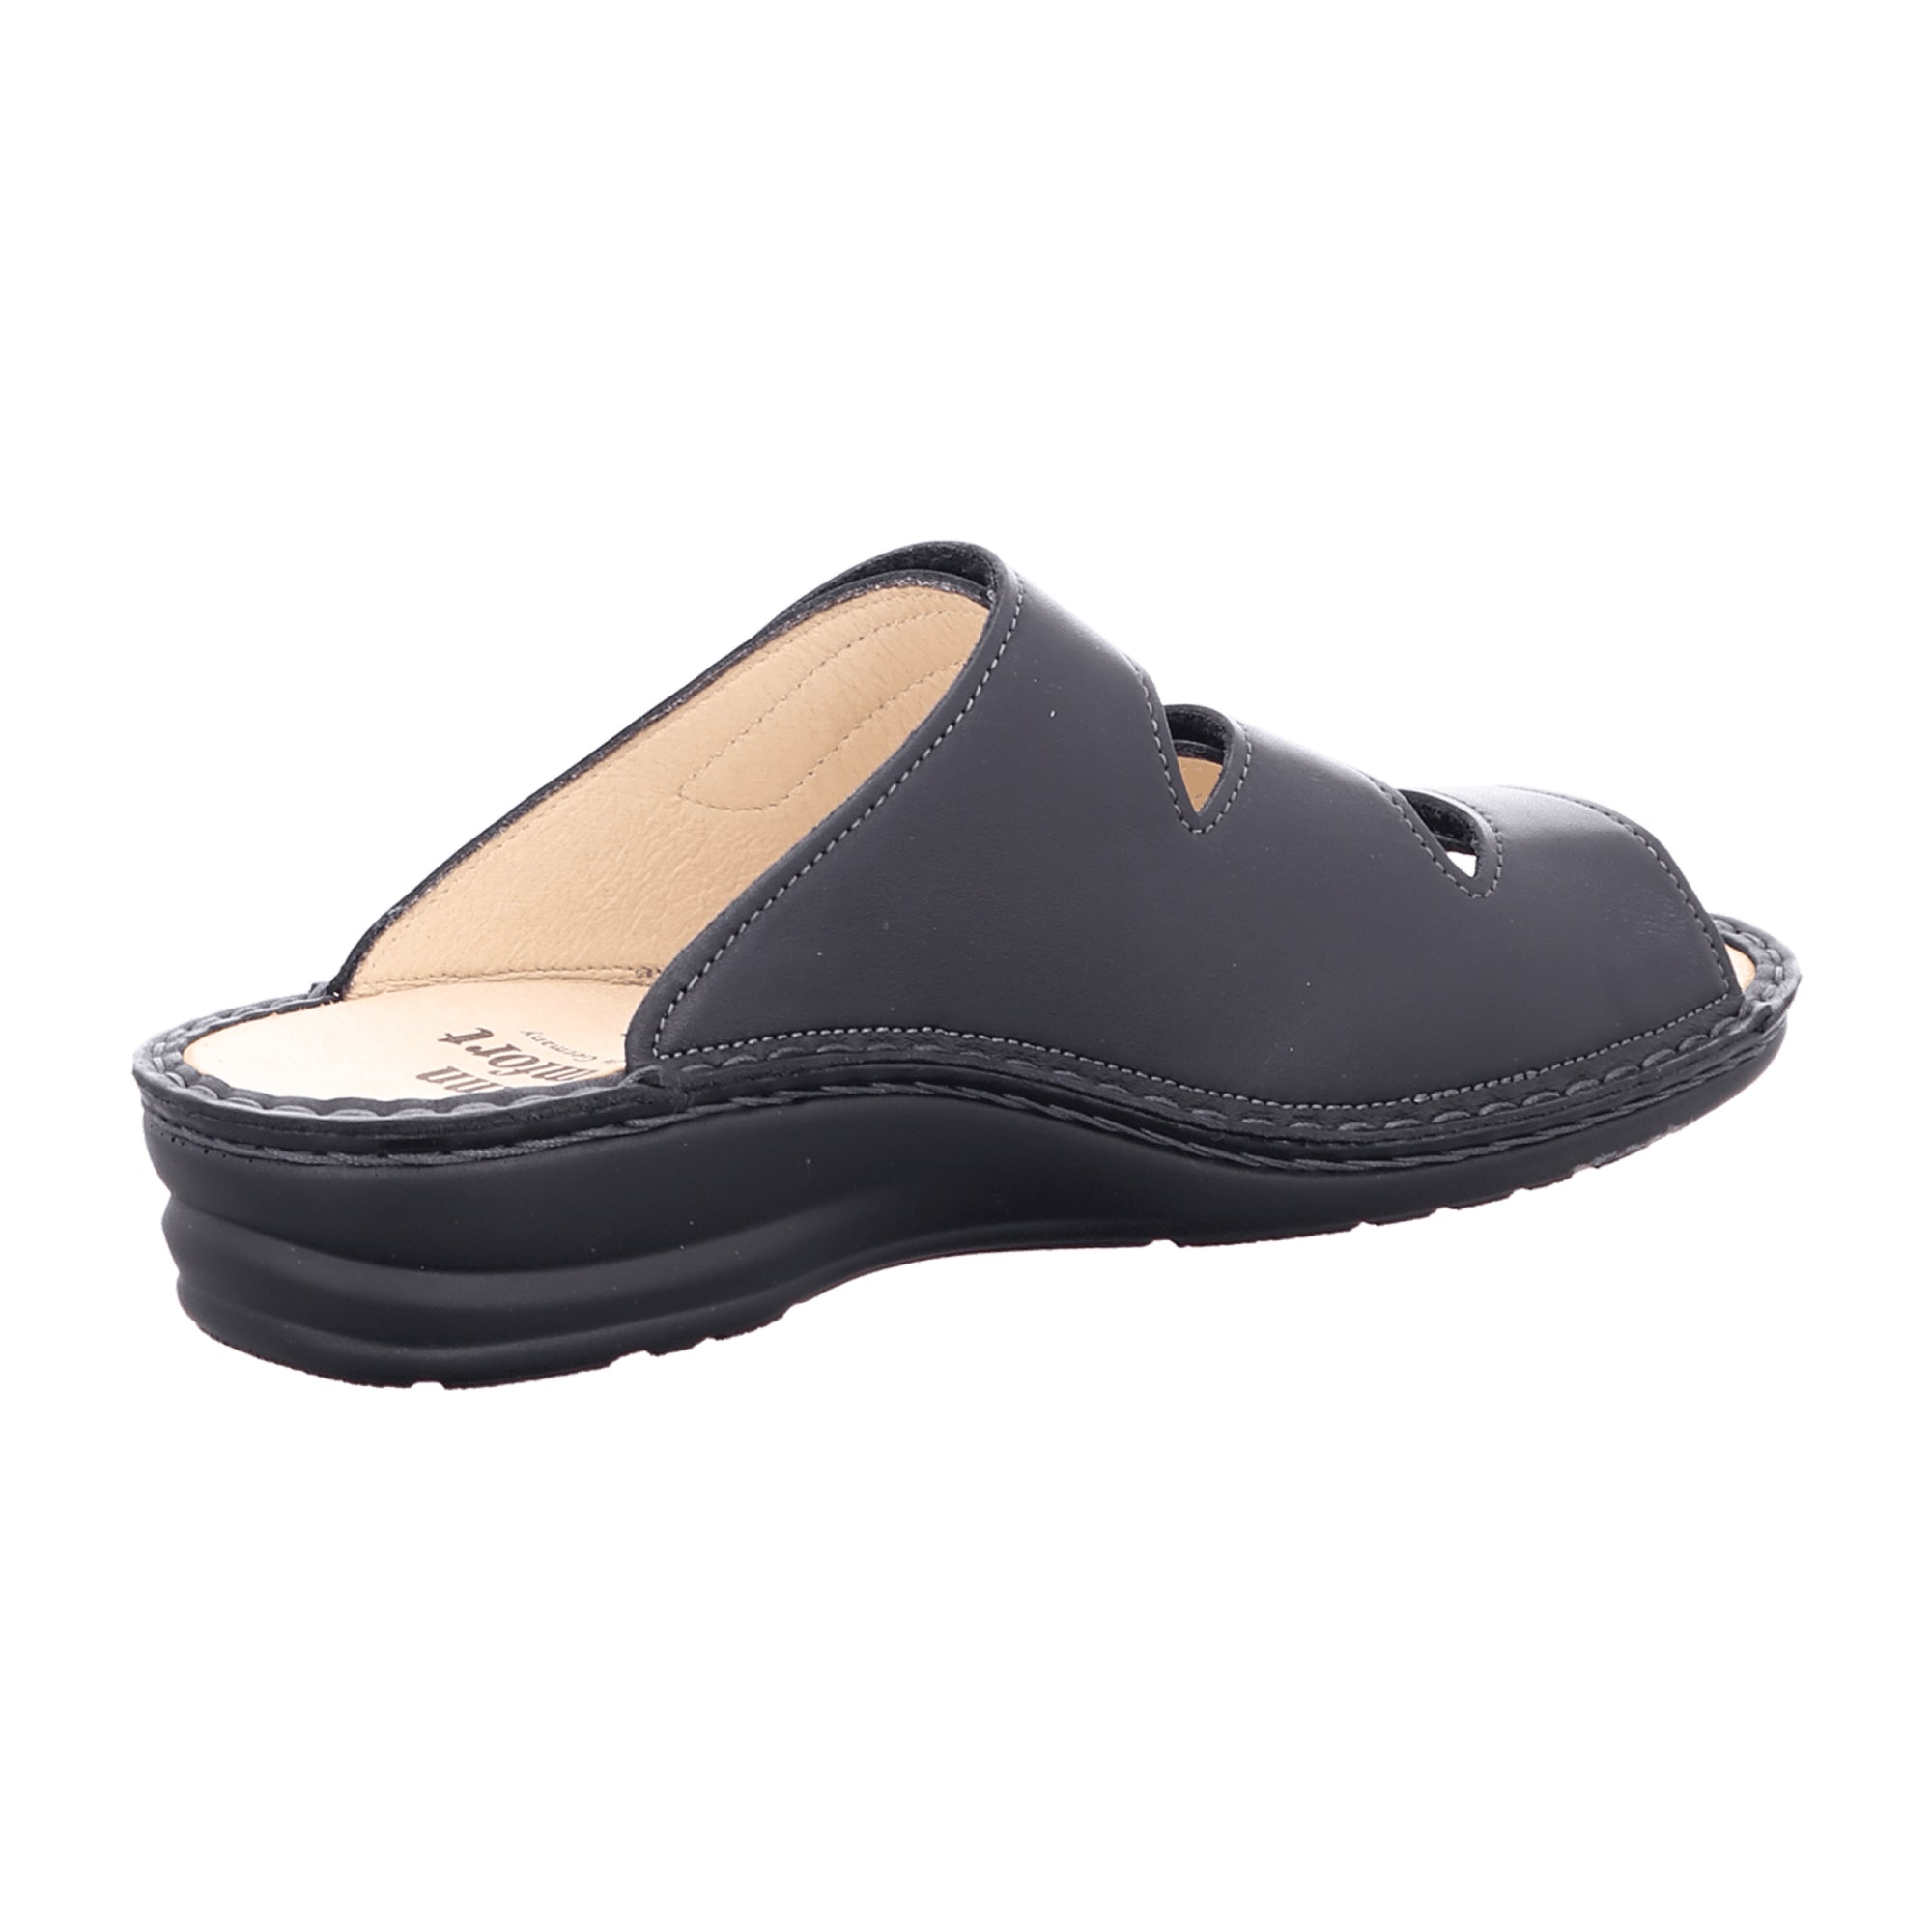 Finn Comfort Fumane Women's Comfort Sandals - Elegant Black